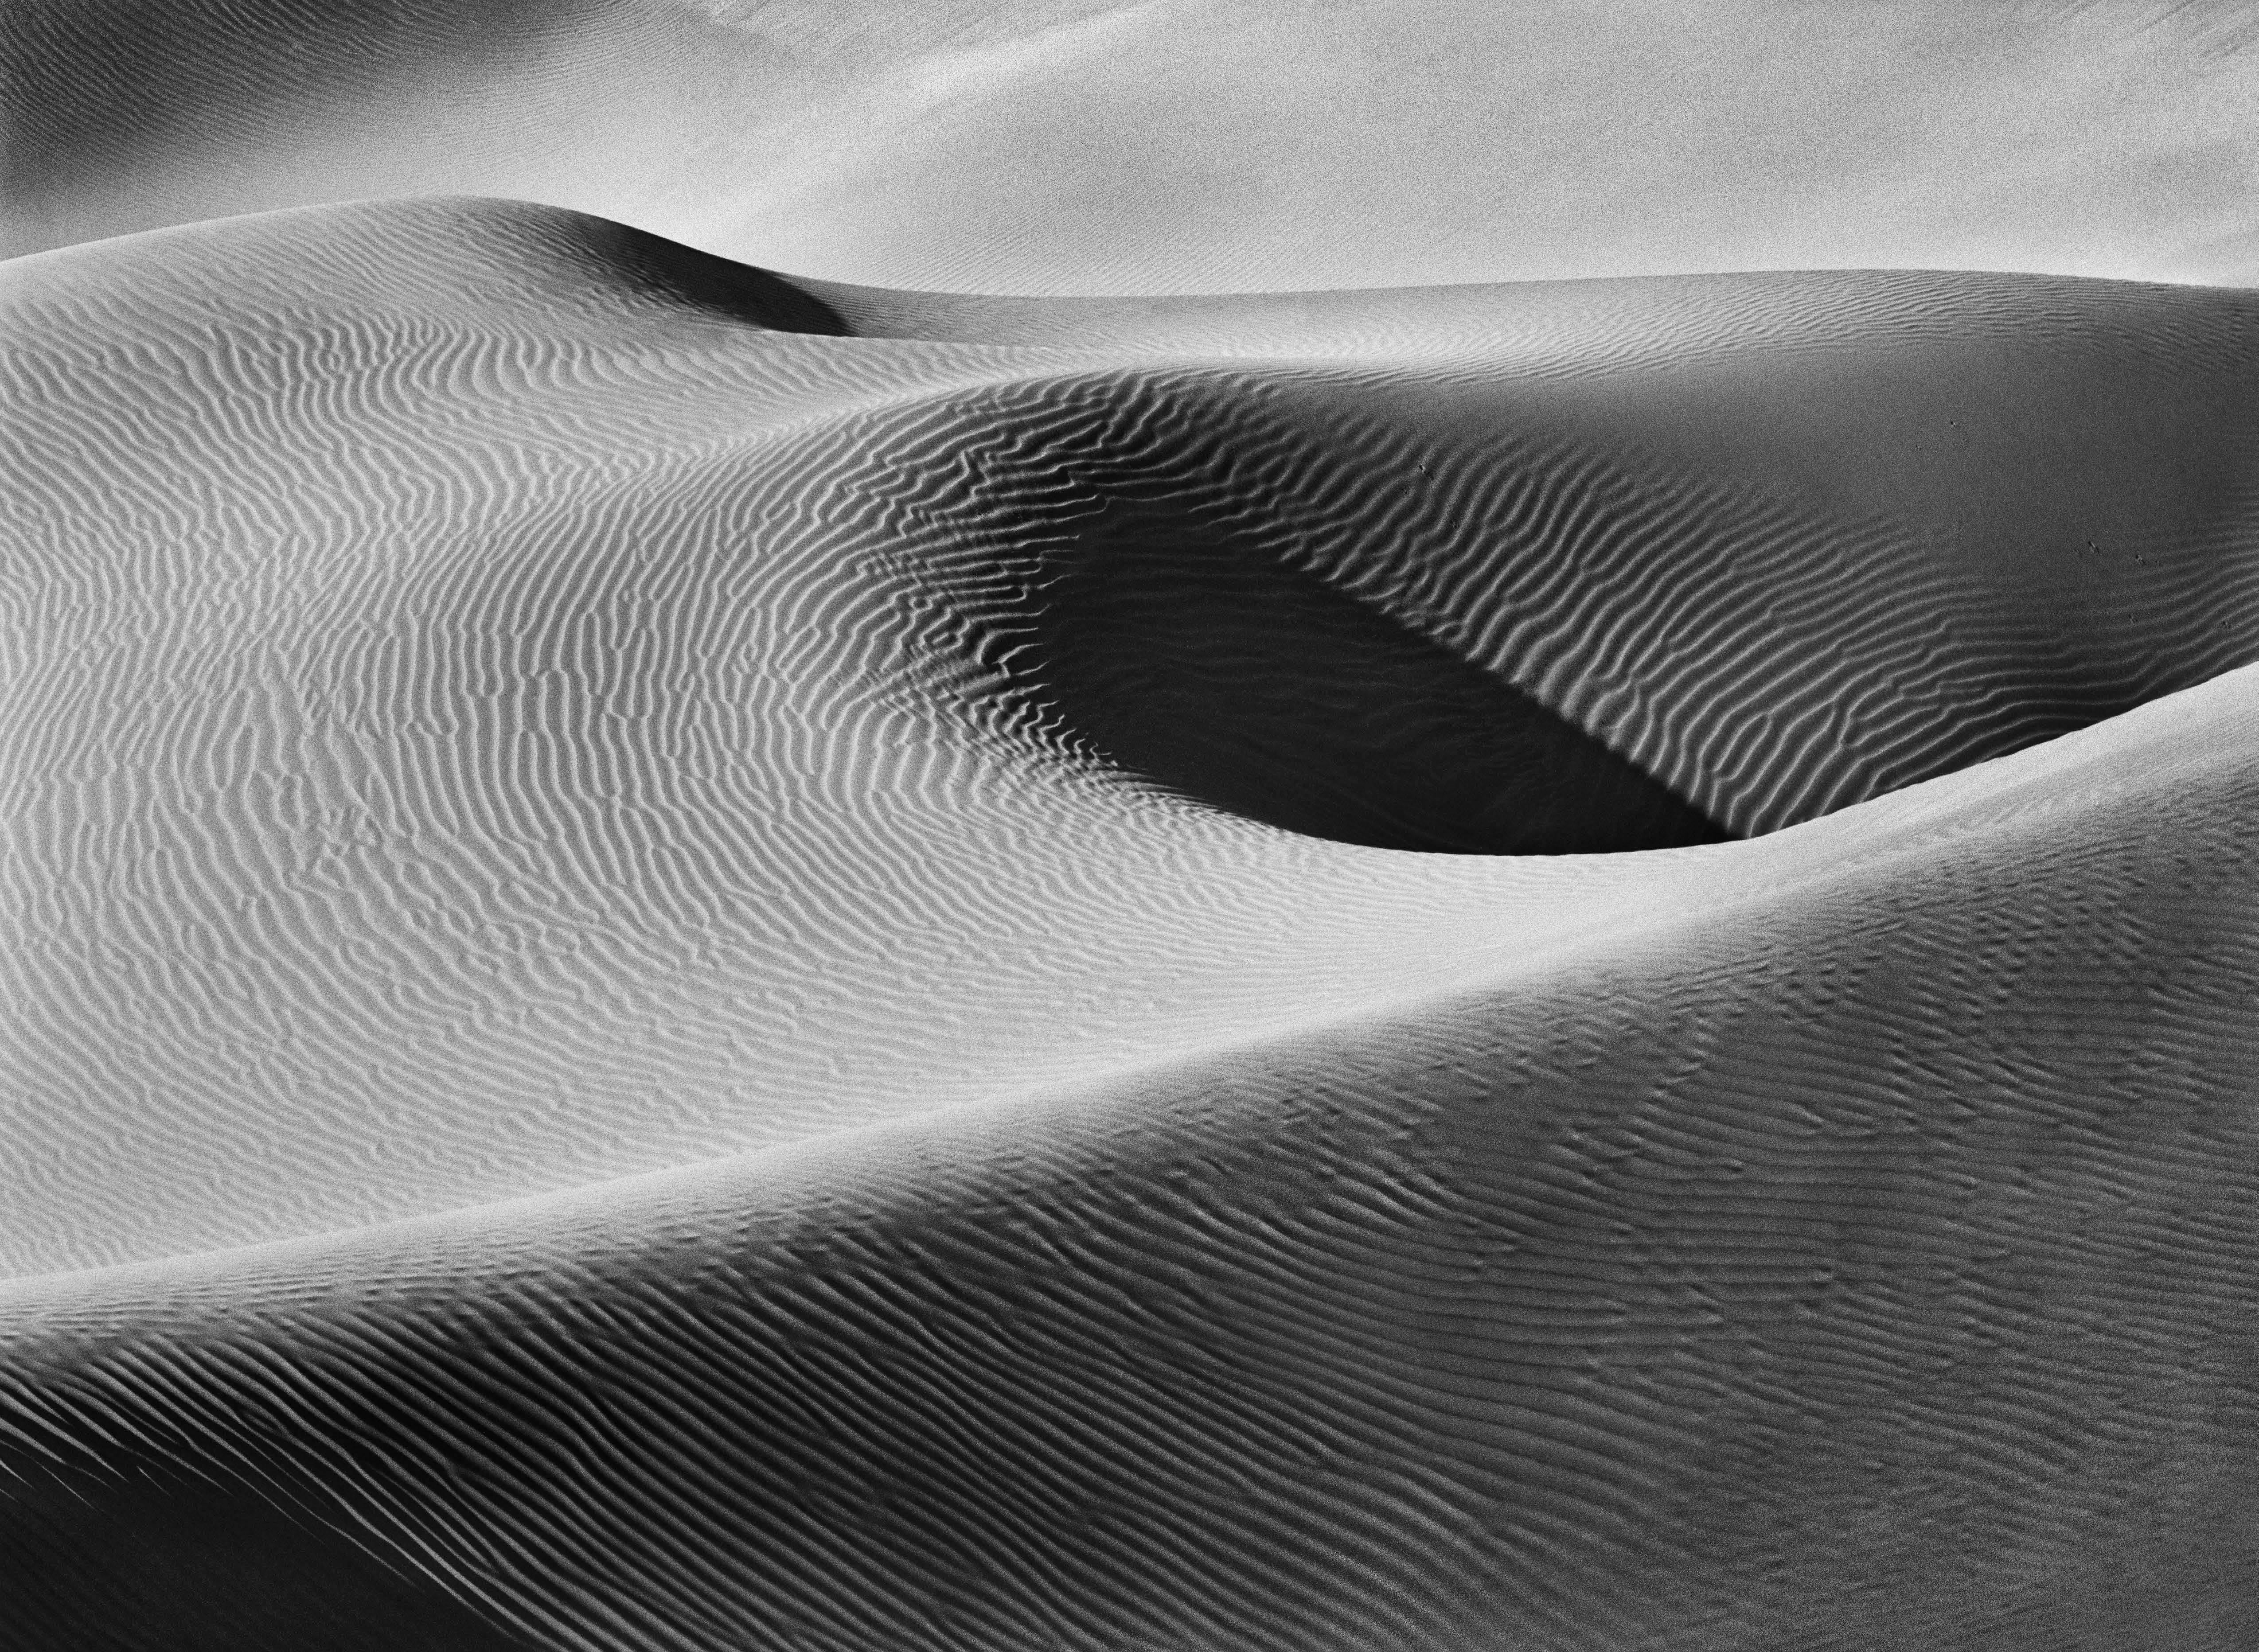 Dunes de sable, parc national du Namib-Naukluft, Namibie, 2005
Sebastião Salgado
Estampillé du cachet de copyright du photographe
Signé, inscrit au revers
Tirage à la gélatine argentique
16 x 20 pouces

Egalement disponible en six autres tailles,